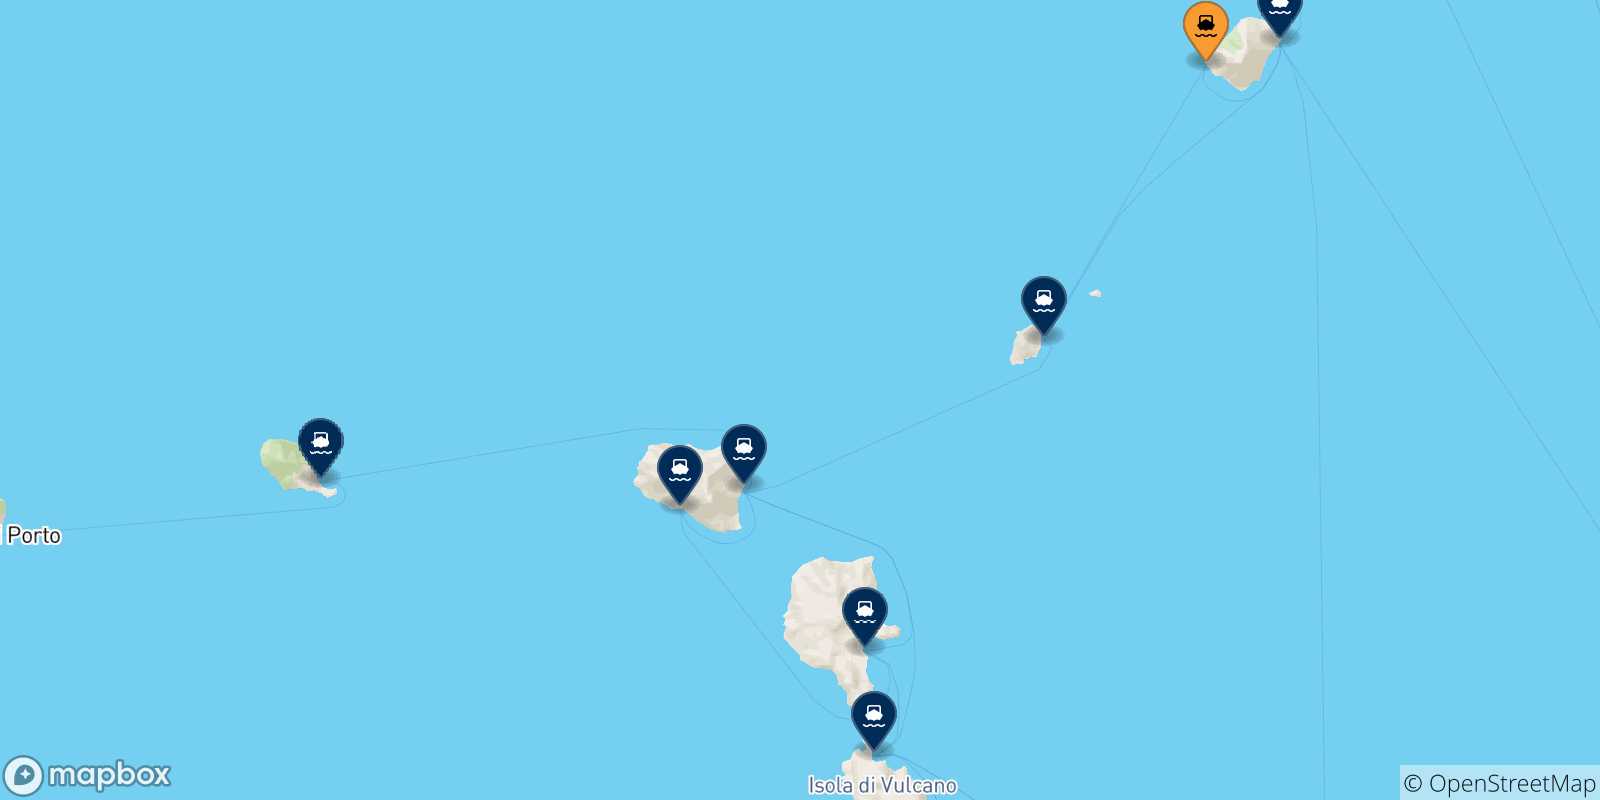 Mappa delle possibili rotte tra Ginostra (Stromboli) e le Isole Eolie